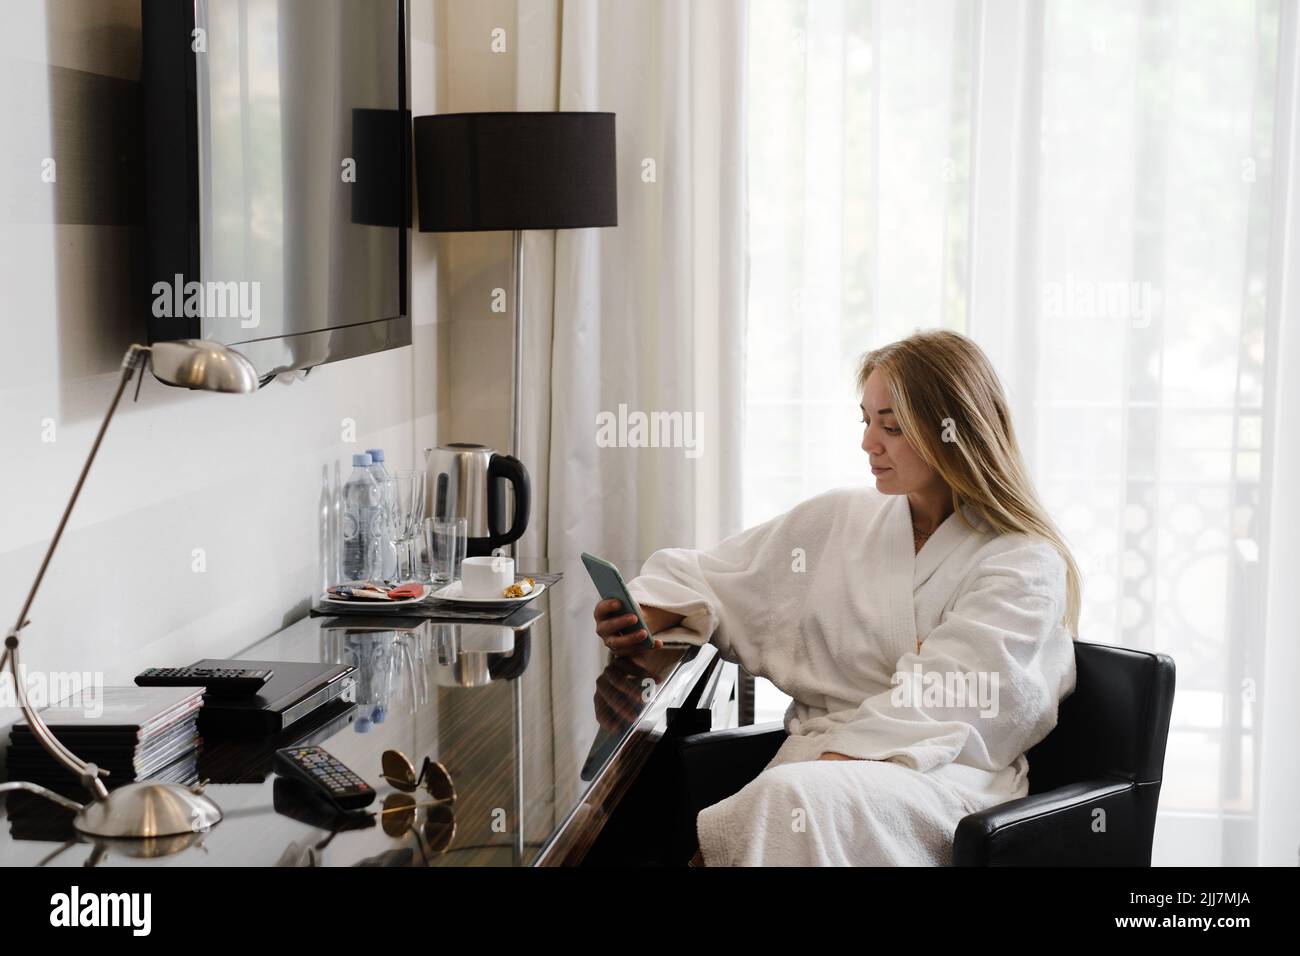 Femme portant un peignoir dans la chambre d'hôtel à l'aide d'un smartphone. Communication, commande de service, achat en ligne pendant les déplacements. Personne dans Banque D'Images